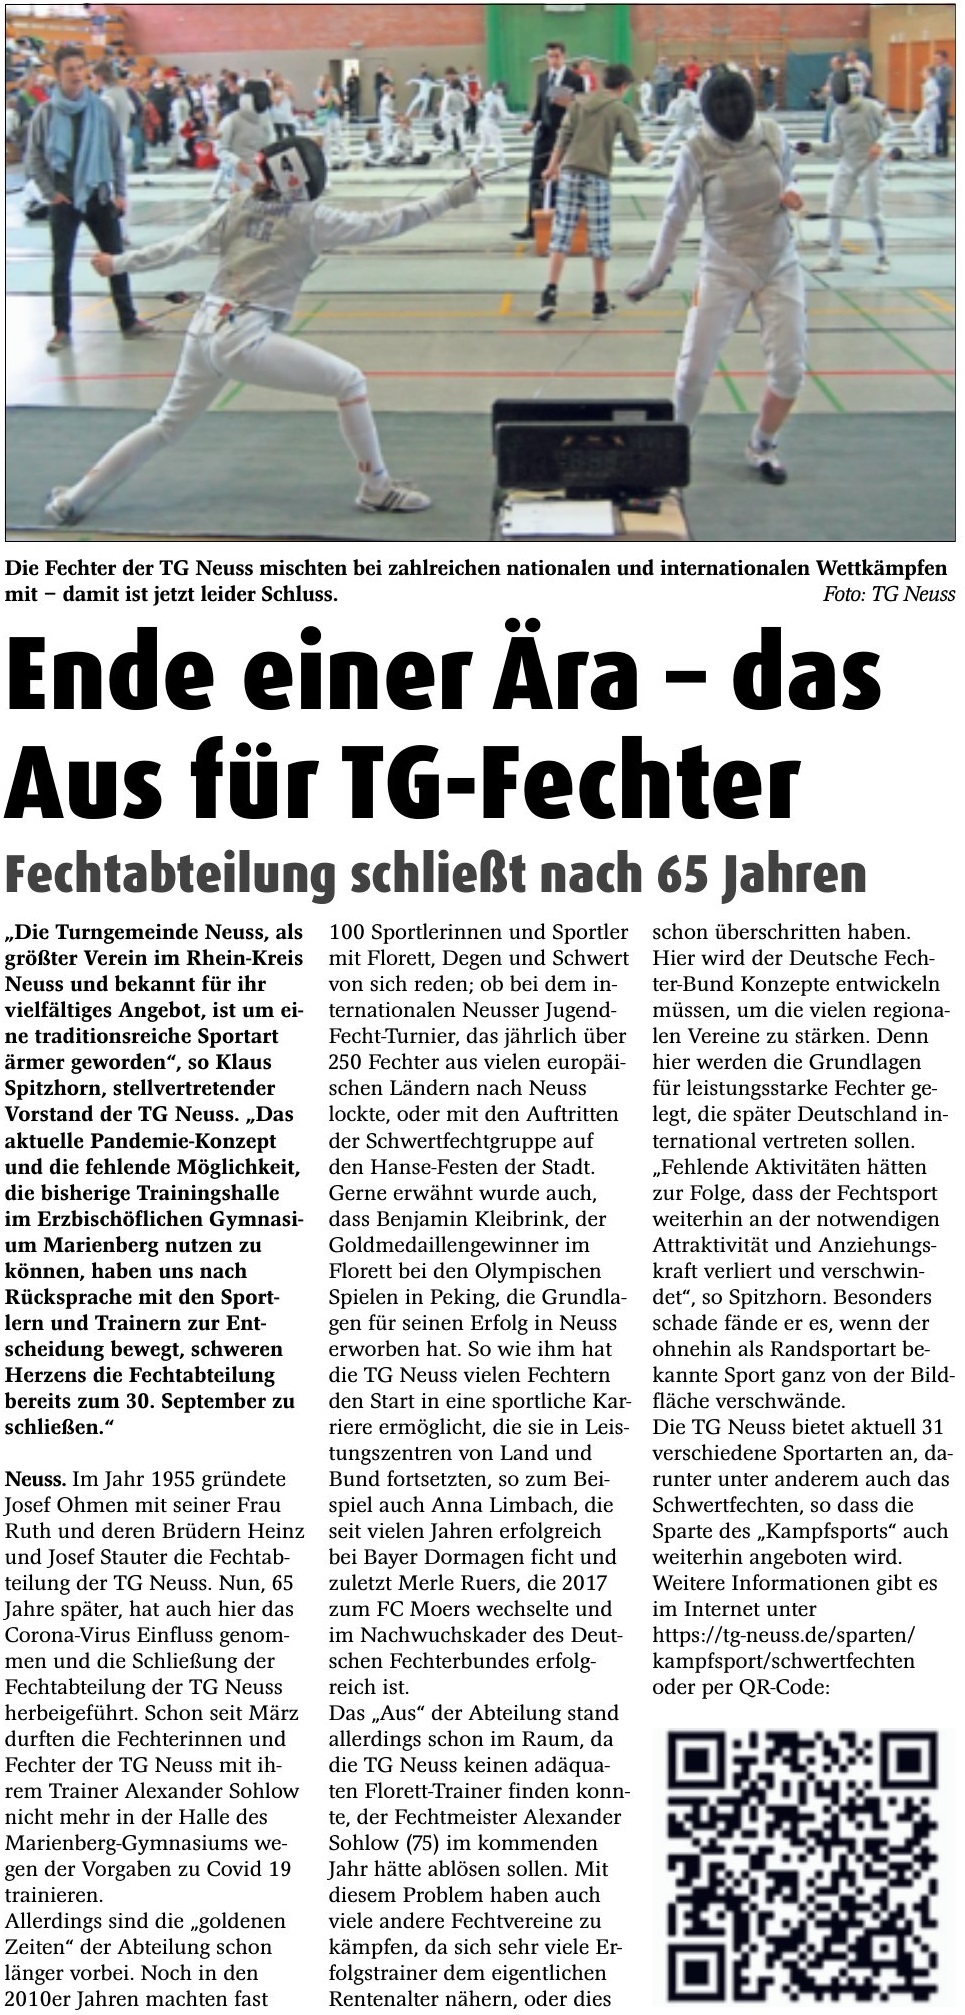 Read more about the article Das Aus für TG-Fechter